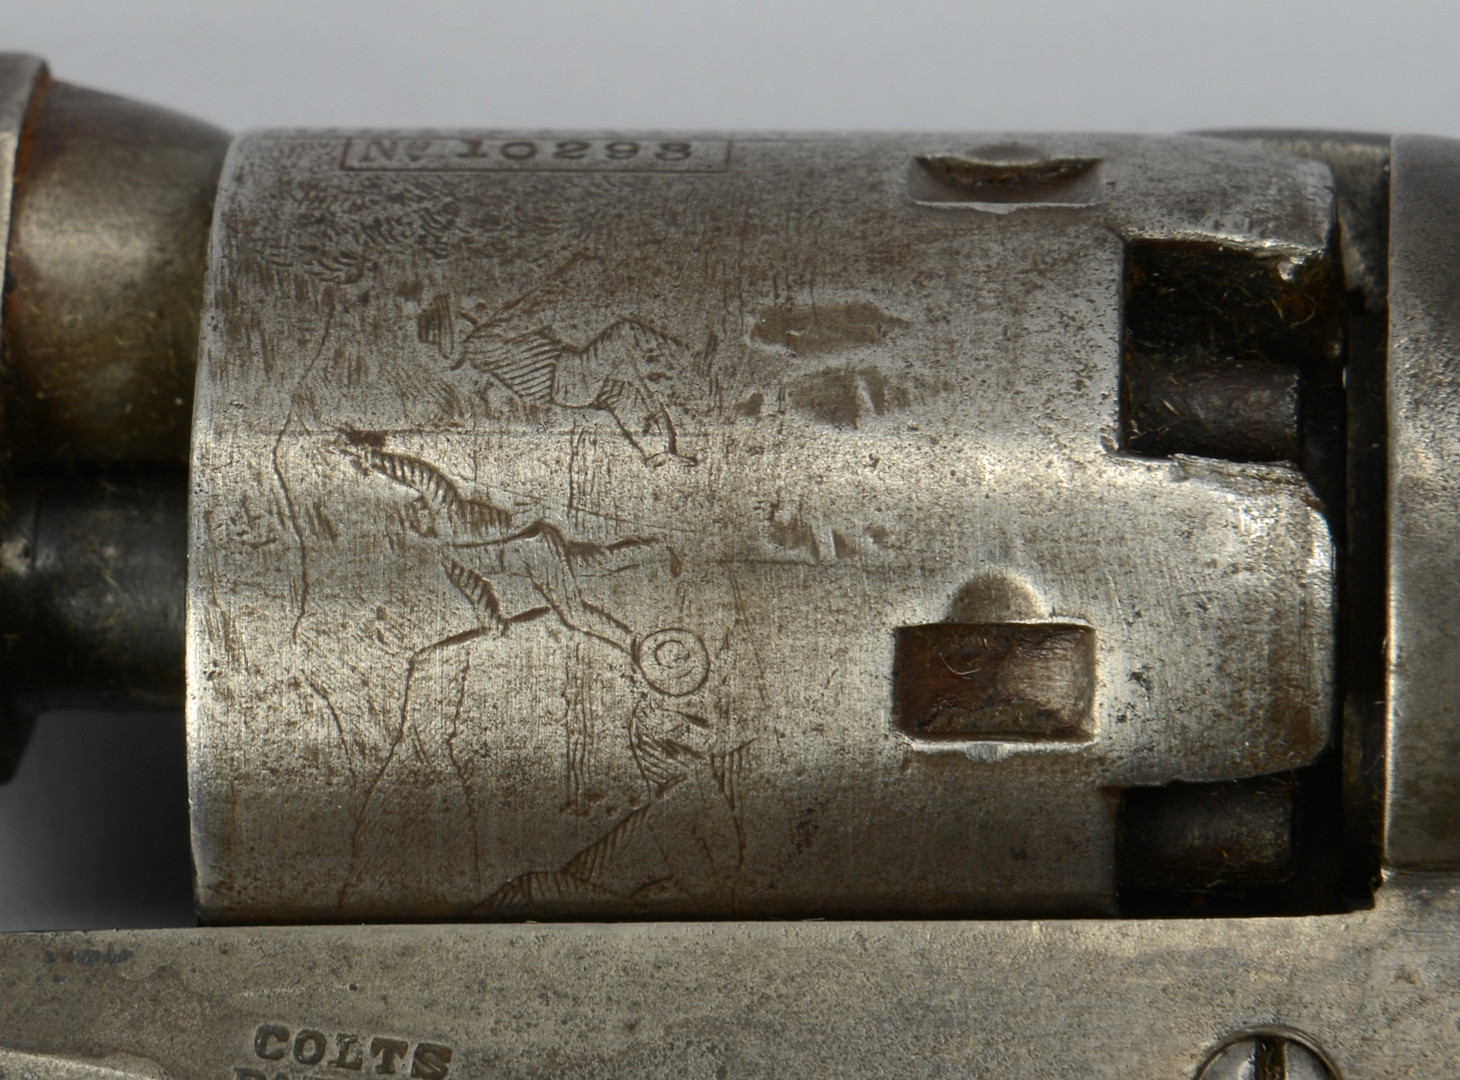 Lot 115: Colt Model 1849 Pocket Revolver